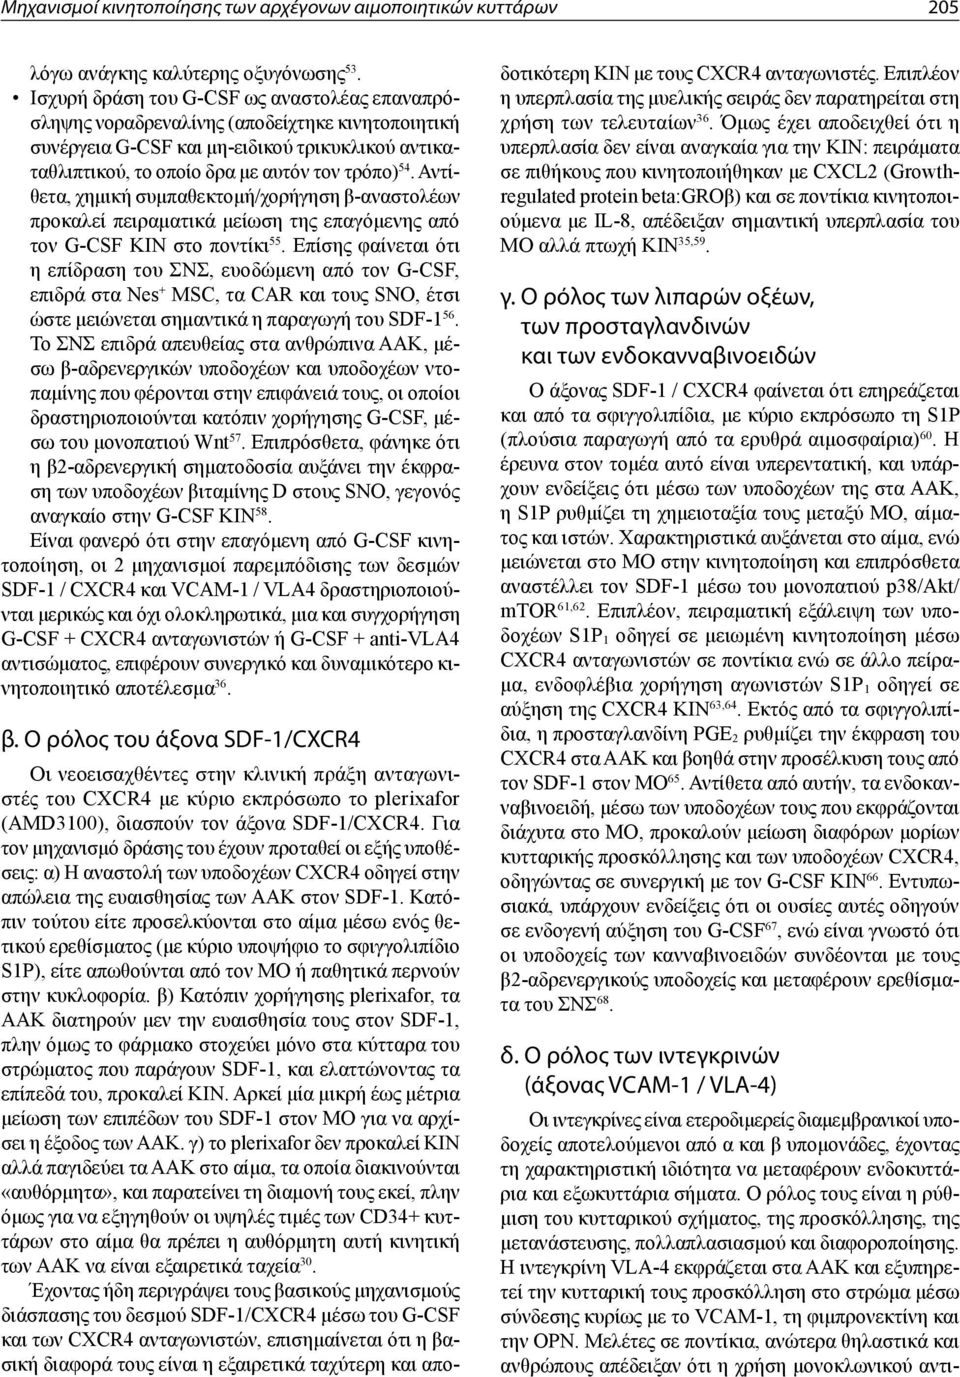 Αντίθετα, χημική συμπαθεκτομή/χορήγηση β-αναστολέων προκαλεί πειραματικά μείωση της επαγόμενης από τον G-CSF ΚΙΝ στο ποντίκι 55.